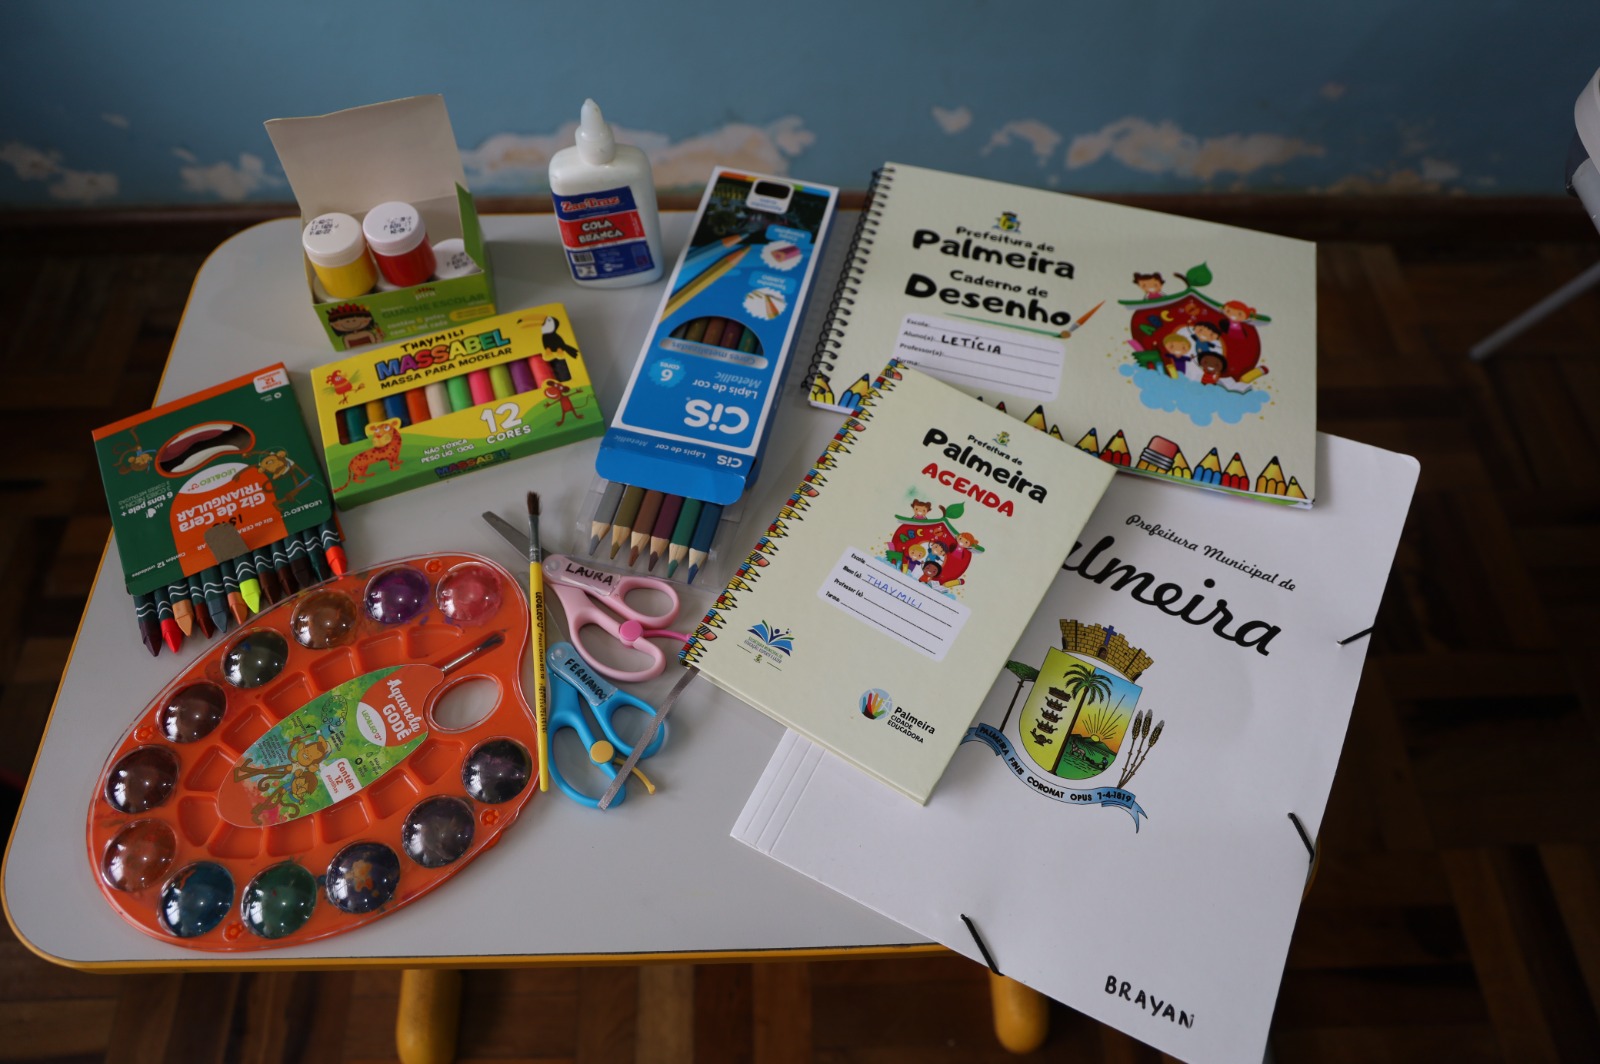 Os kits foram distribuídos para todos os níveis de ensino, desde a educação infantil até o 5º ano do ensino fundamental